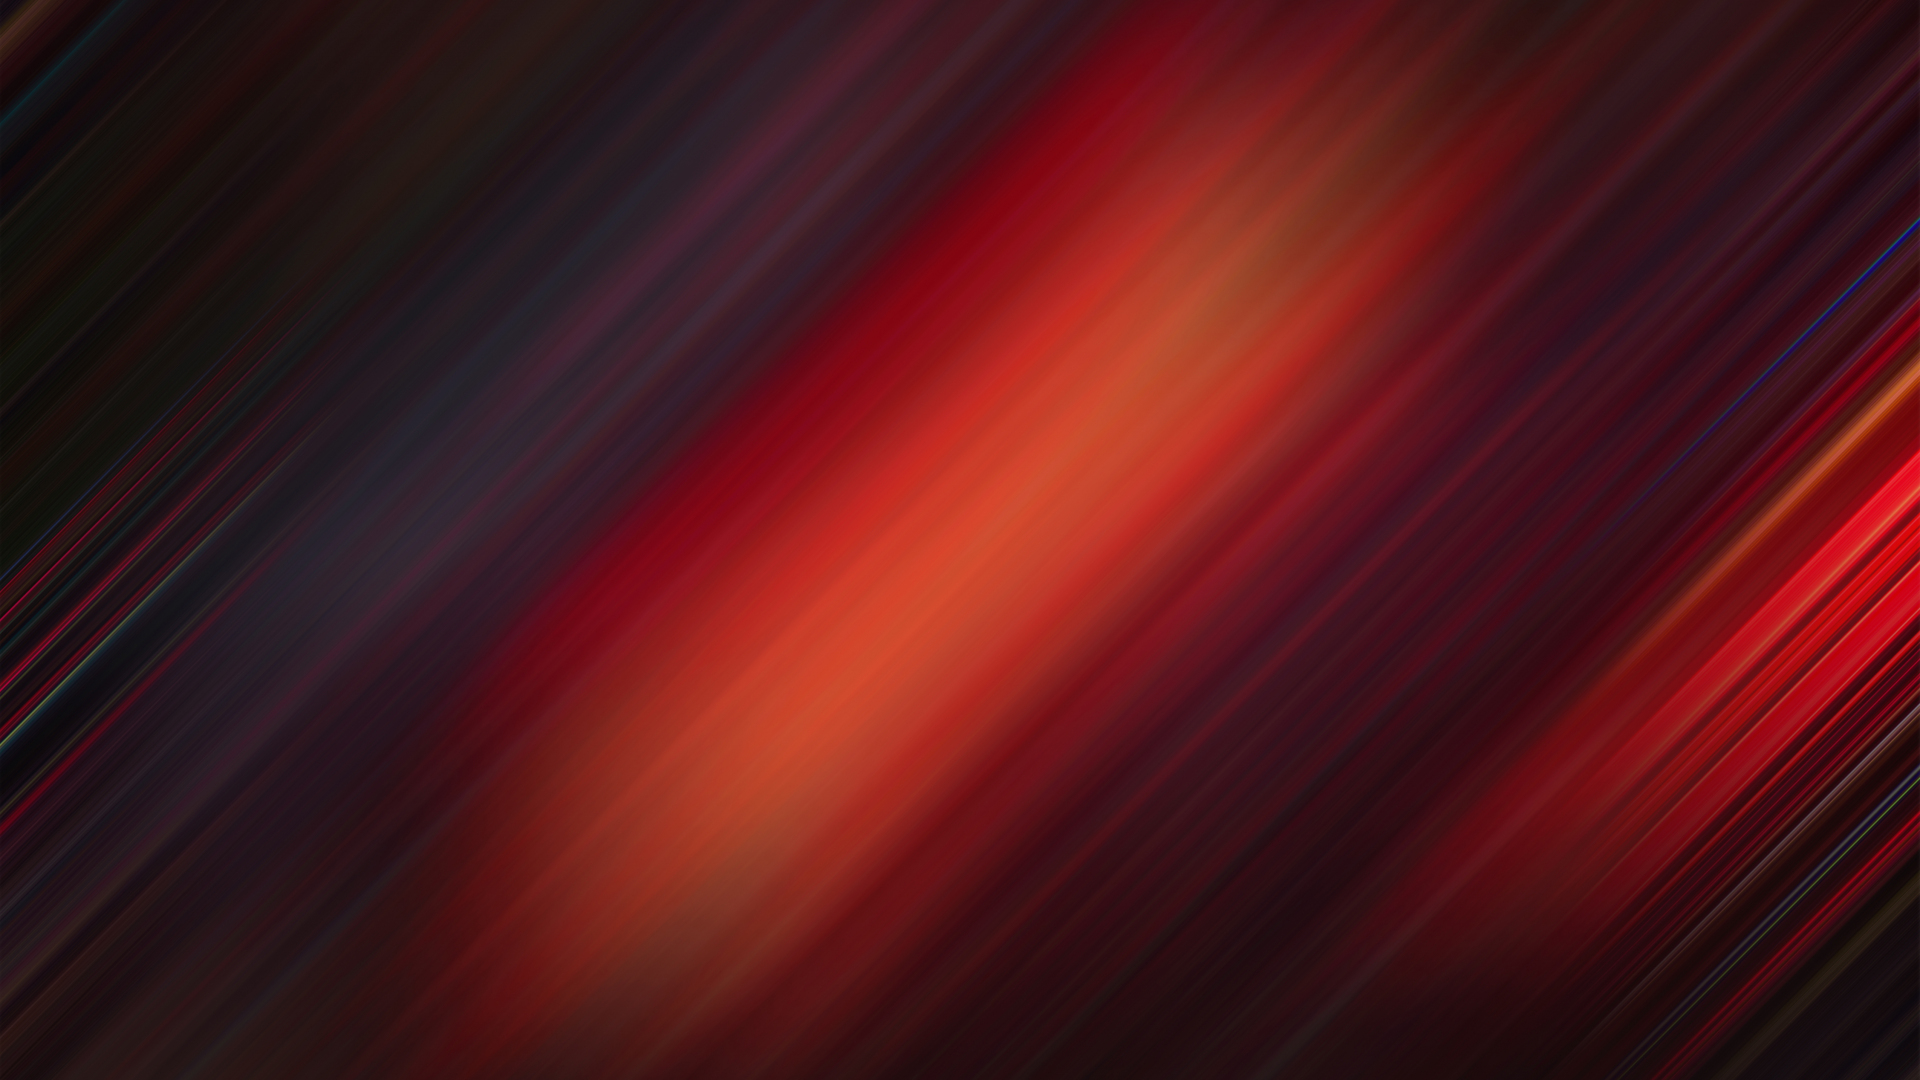 Download wallpaper 1920x1080 gradient, stripes, dark-red, blur, full hd,  hdtv, fhd, 1080p wallpaper, 1920x1080 hd background, 22080